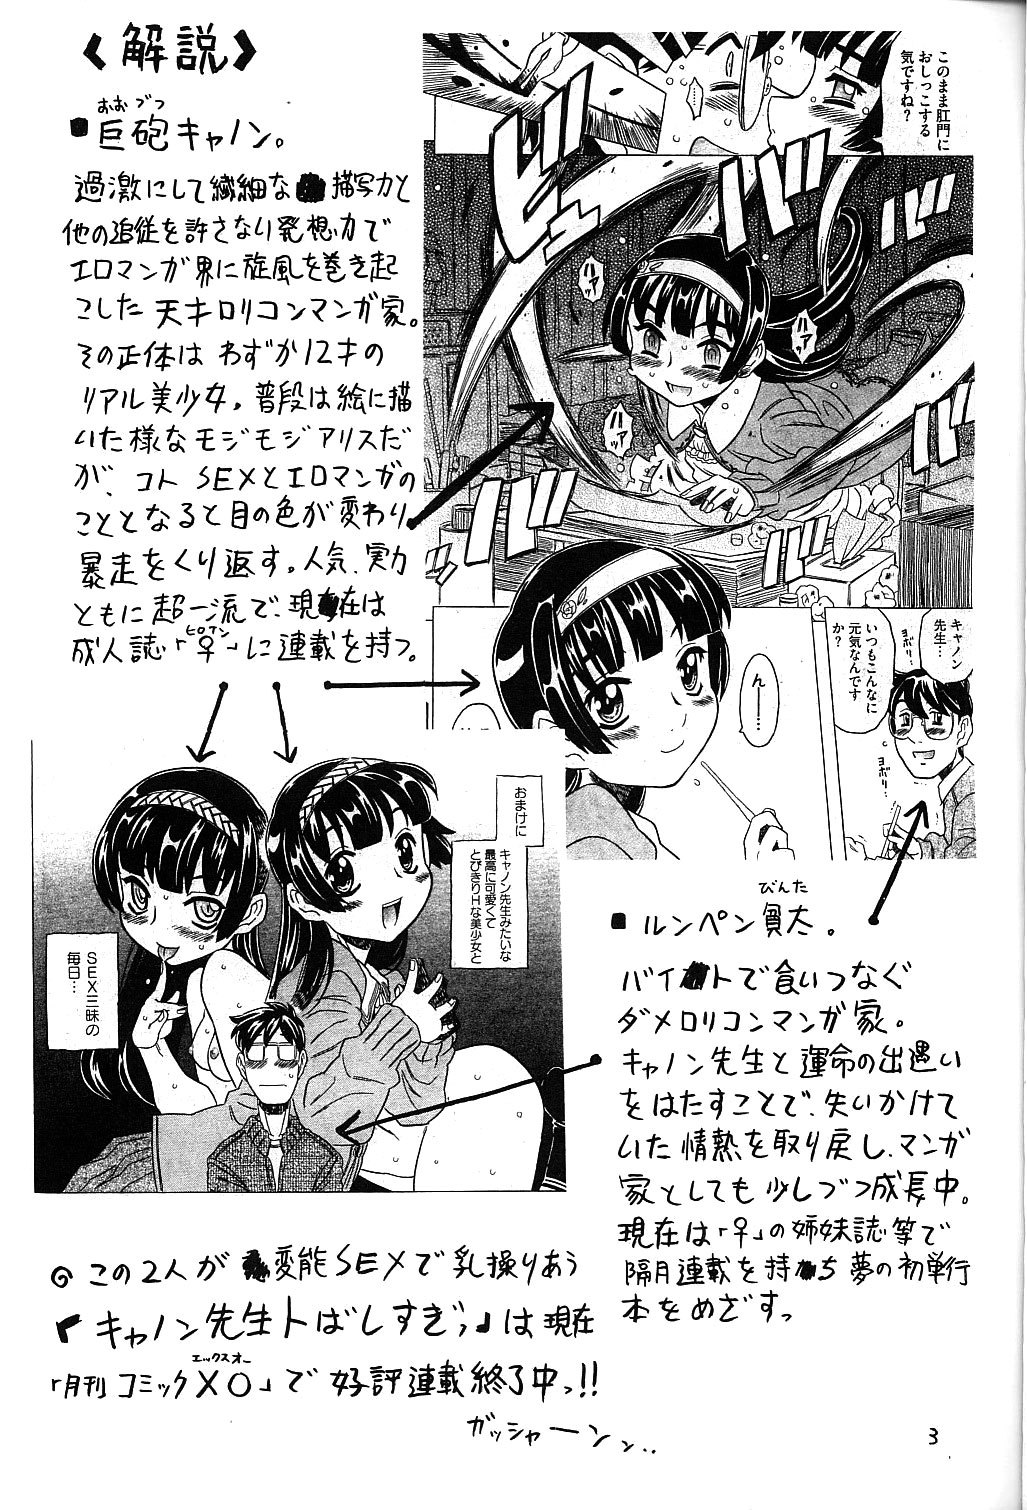 Female Ero Manga Artist Scorned 1 hentai manga